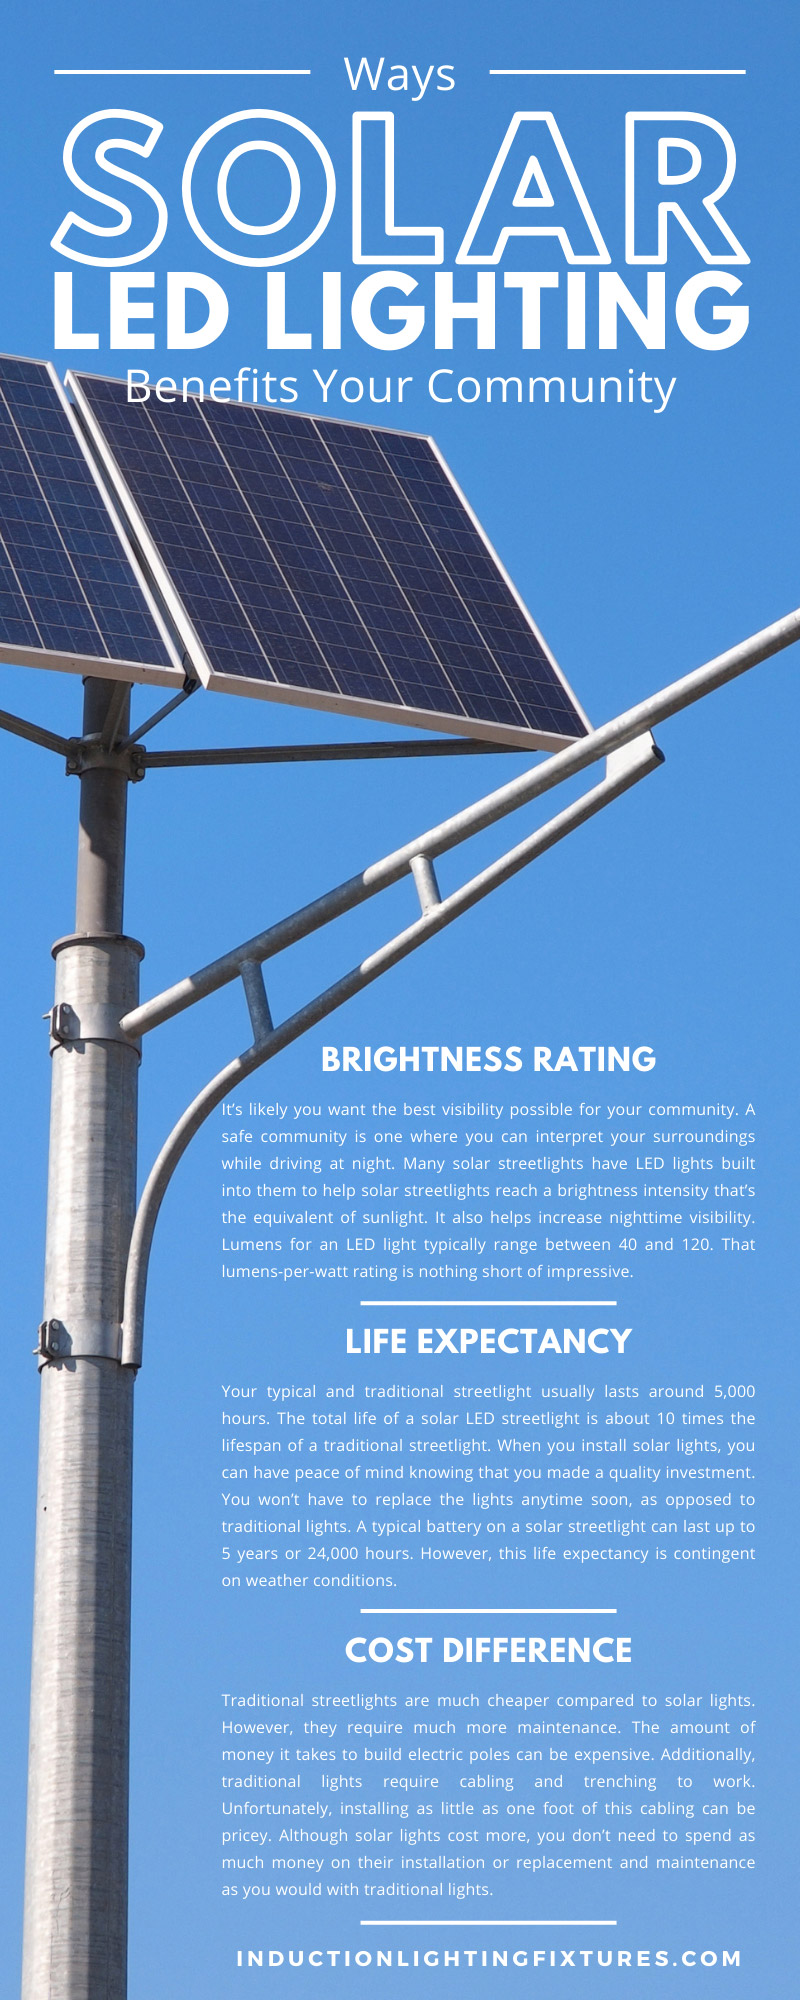 Ways Solar LED Lighting Benefits Your Community